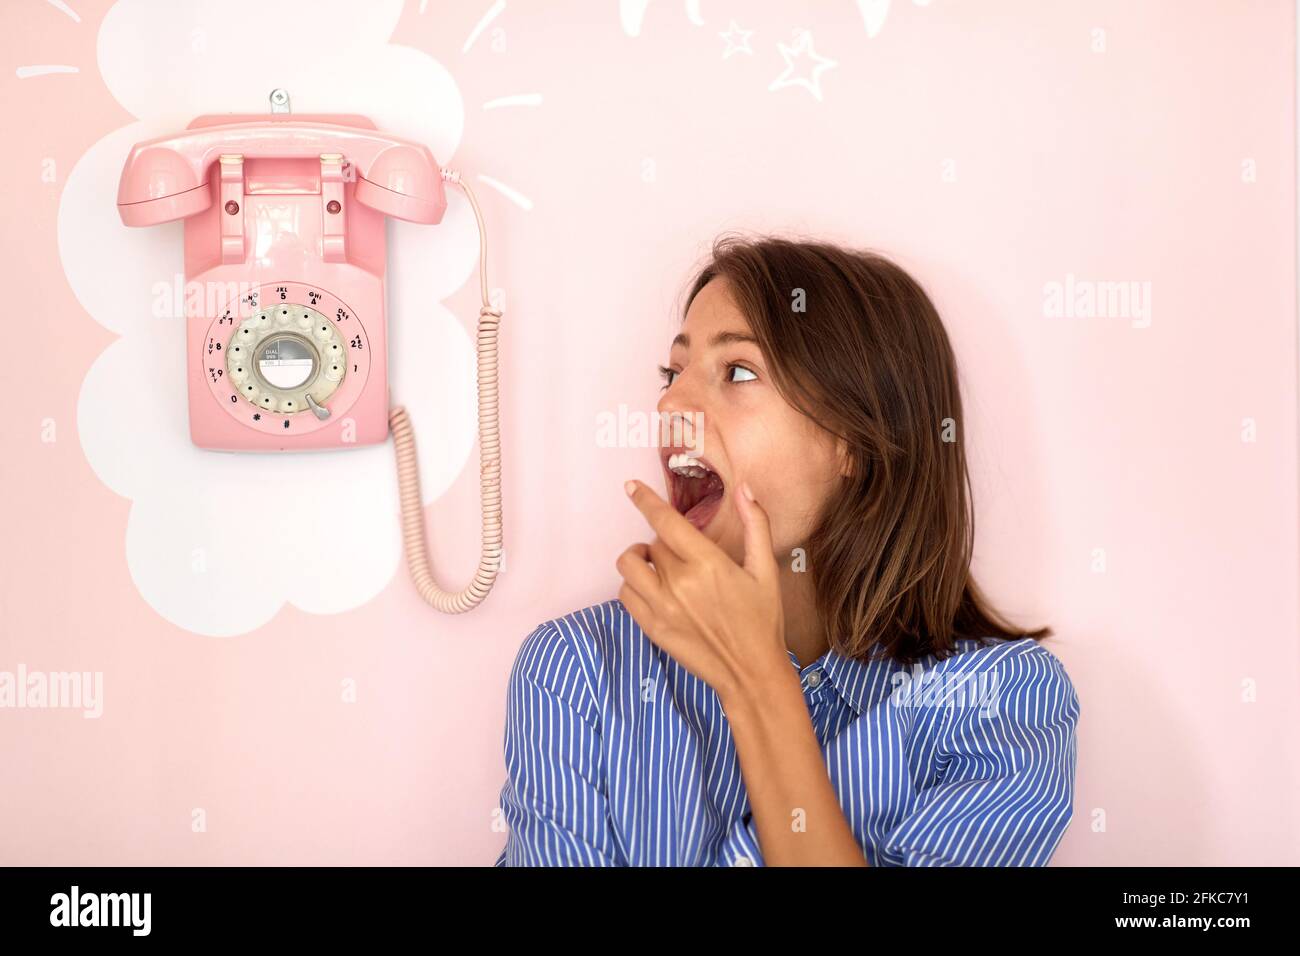 Ein schönes junges Mädchen, das neben einem Retro-Telefon steht, das in einer Konditorei an der Wand hängt und in einer angenehmen Atmosphäre auf einen Anruf wartet. Gebäck Stockfoto